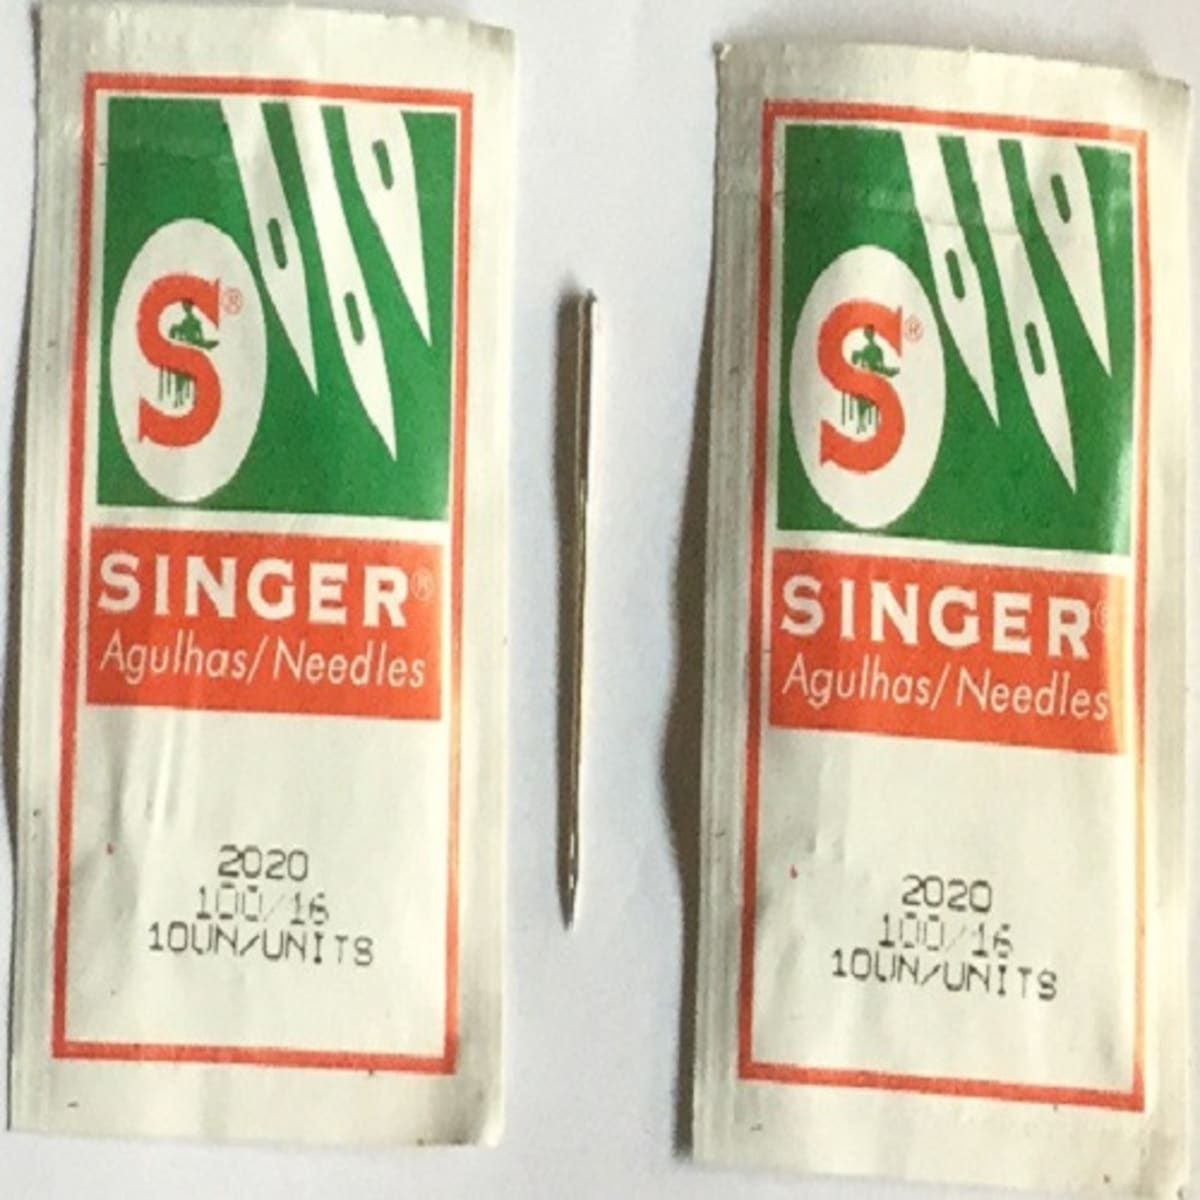  SINGER Sewing Machine Needles